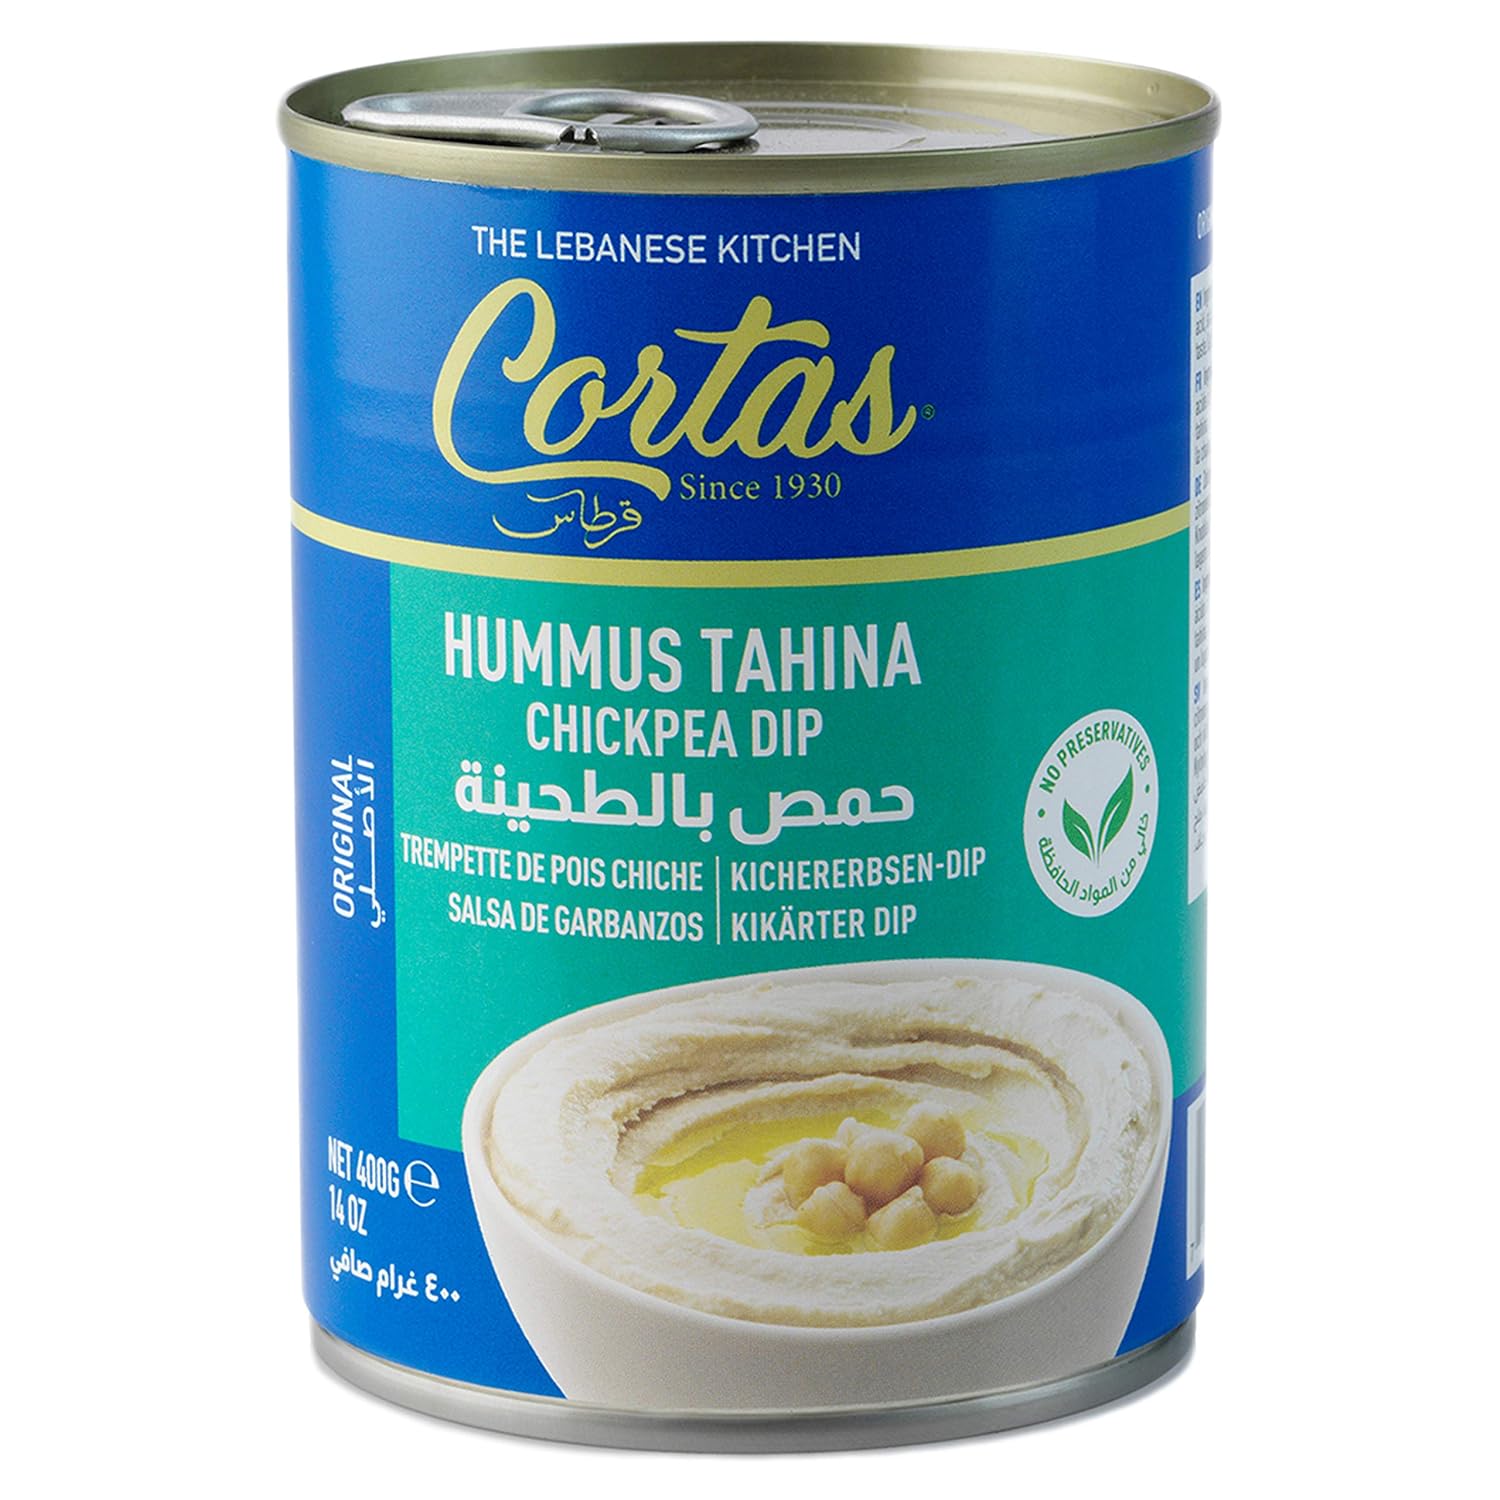 【6 Pack】Cortas Hummus Tahina Chickpea Dip 14 oz - Mideast Grocers